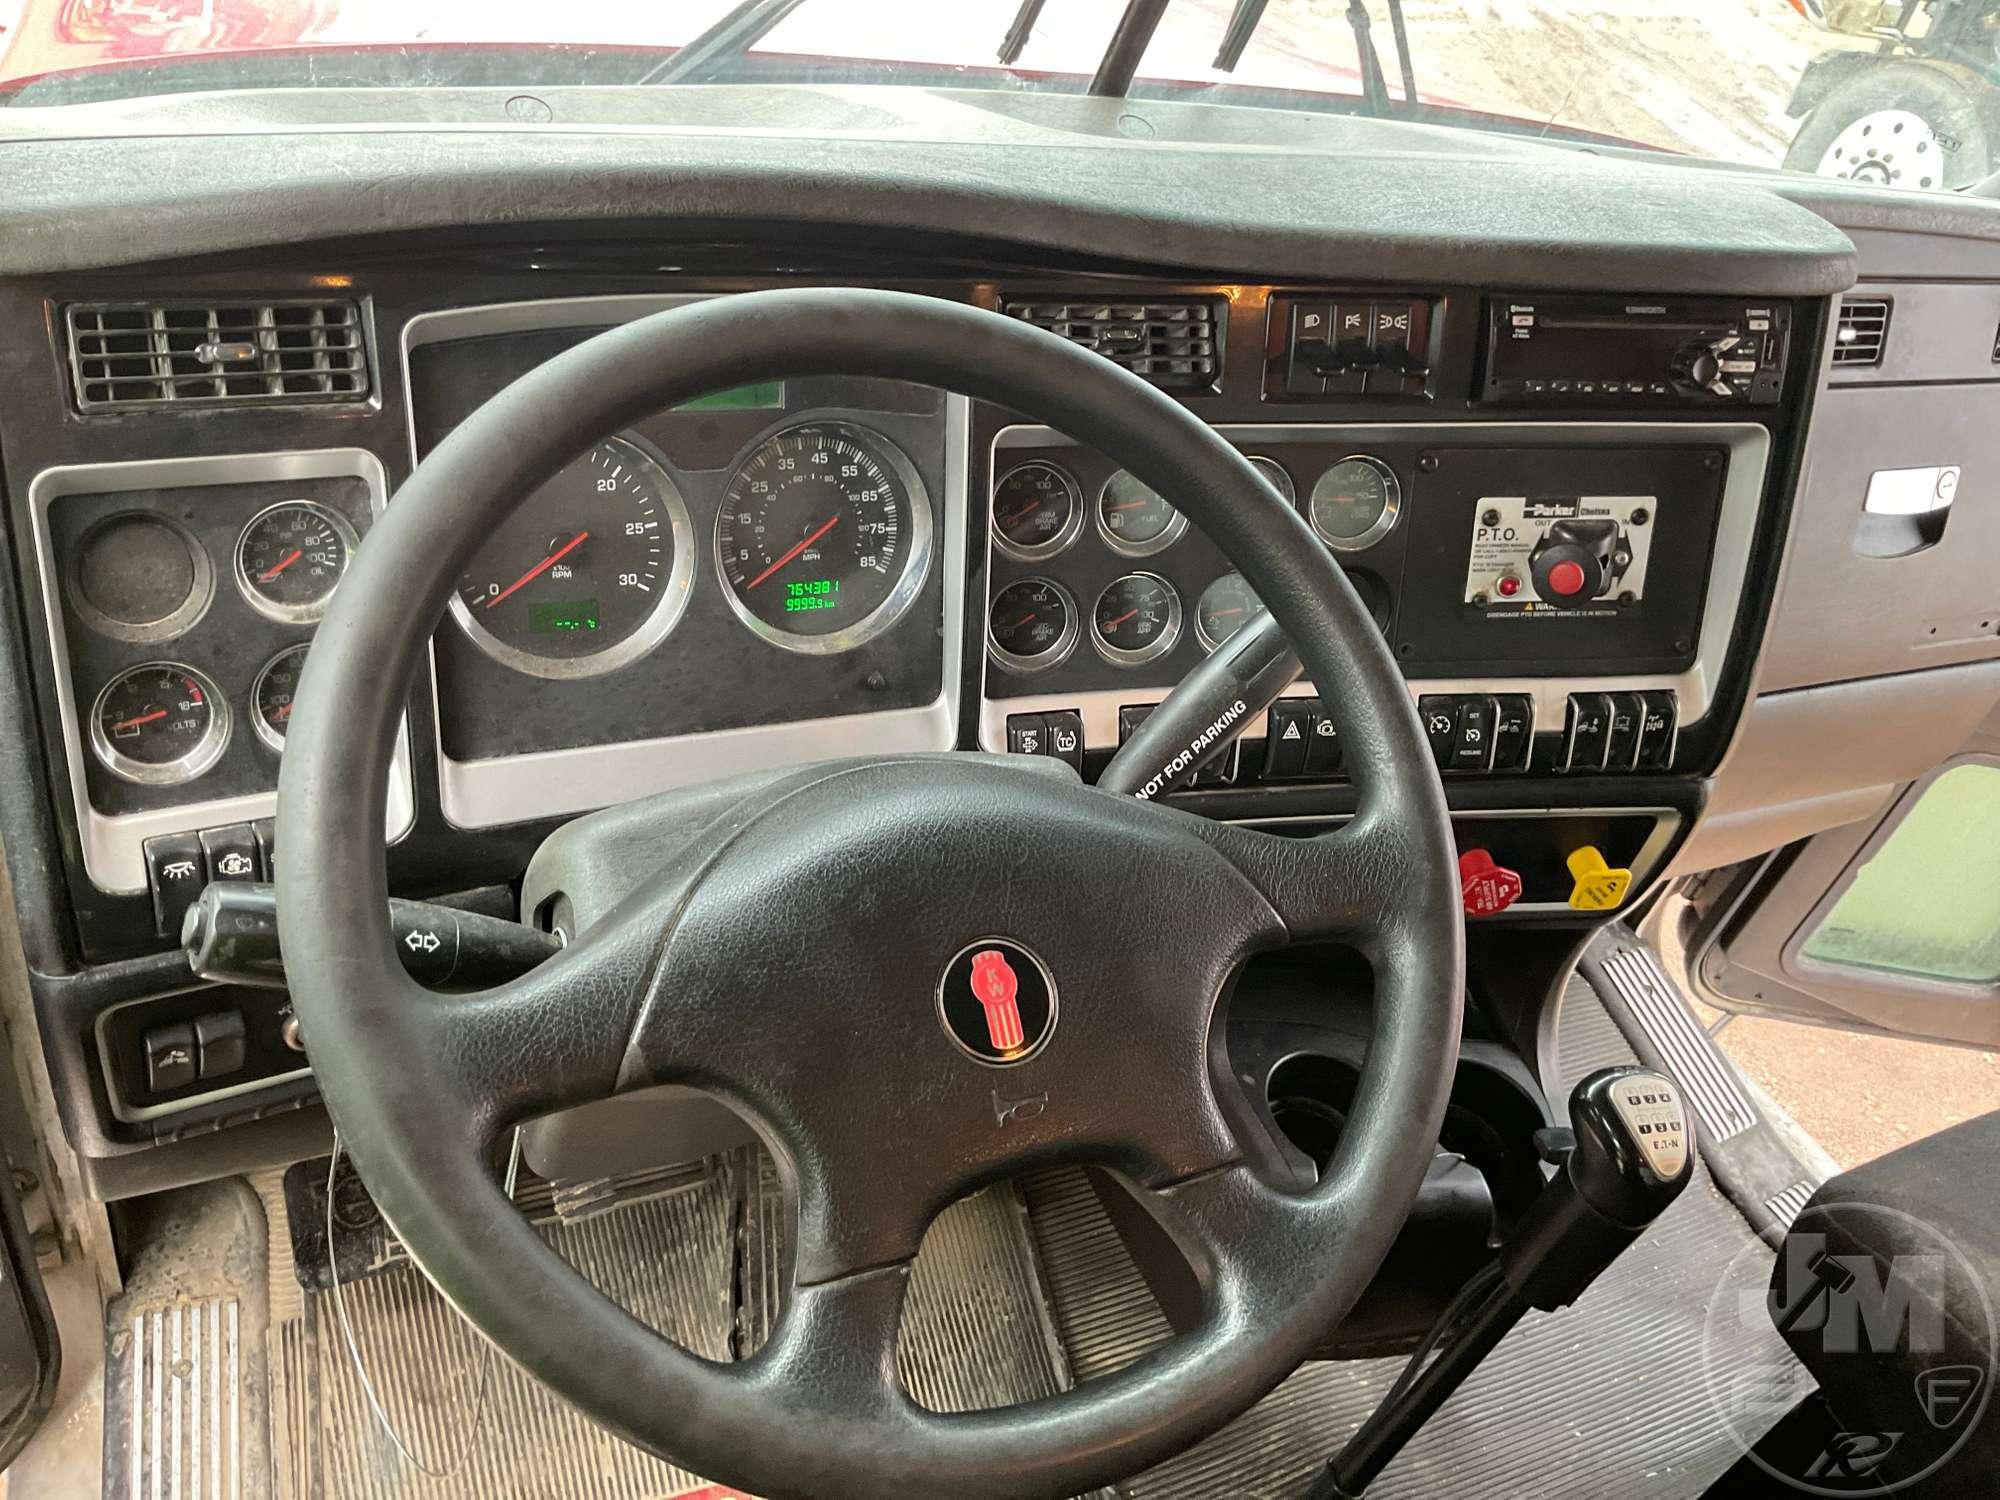 2019 KENWORTH W900 SERIES TANDEM AXLE DAY CAB TRUCK TRACTOR VIN: 1XKWD49X8KJ245832